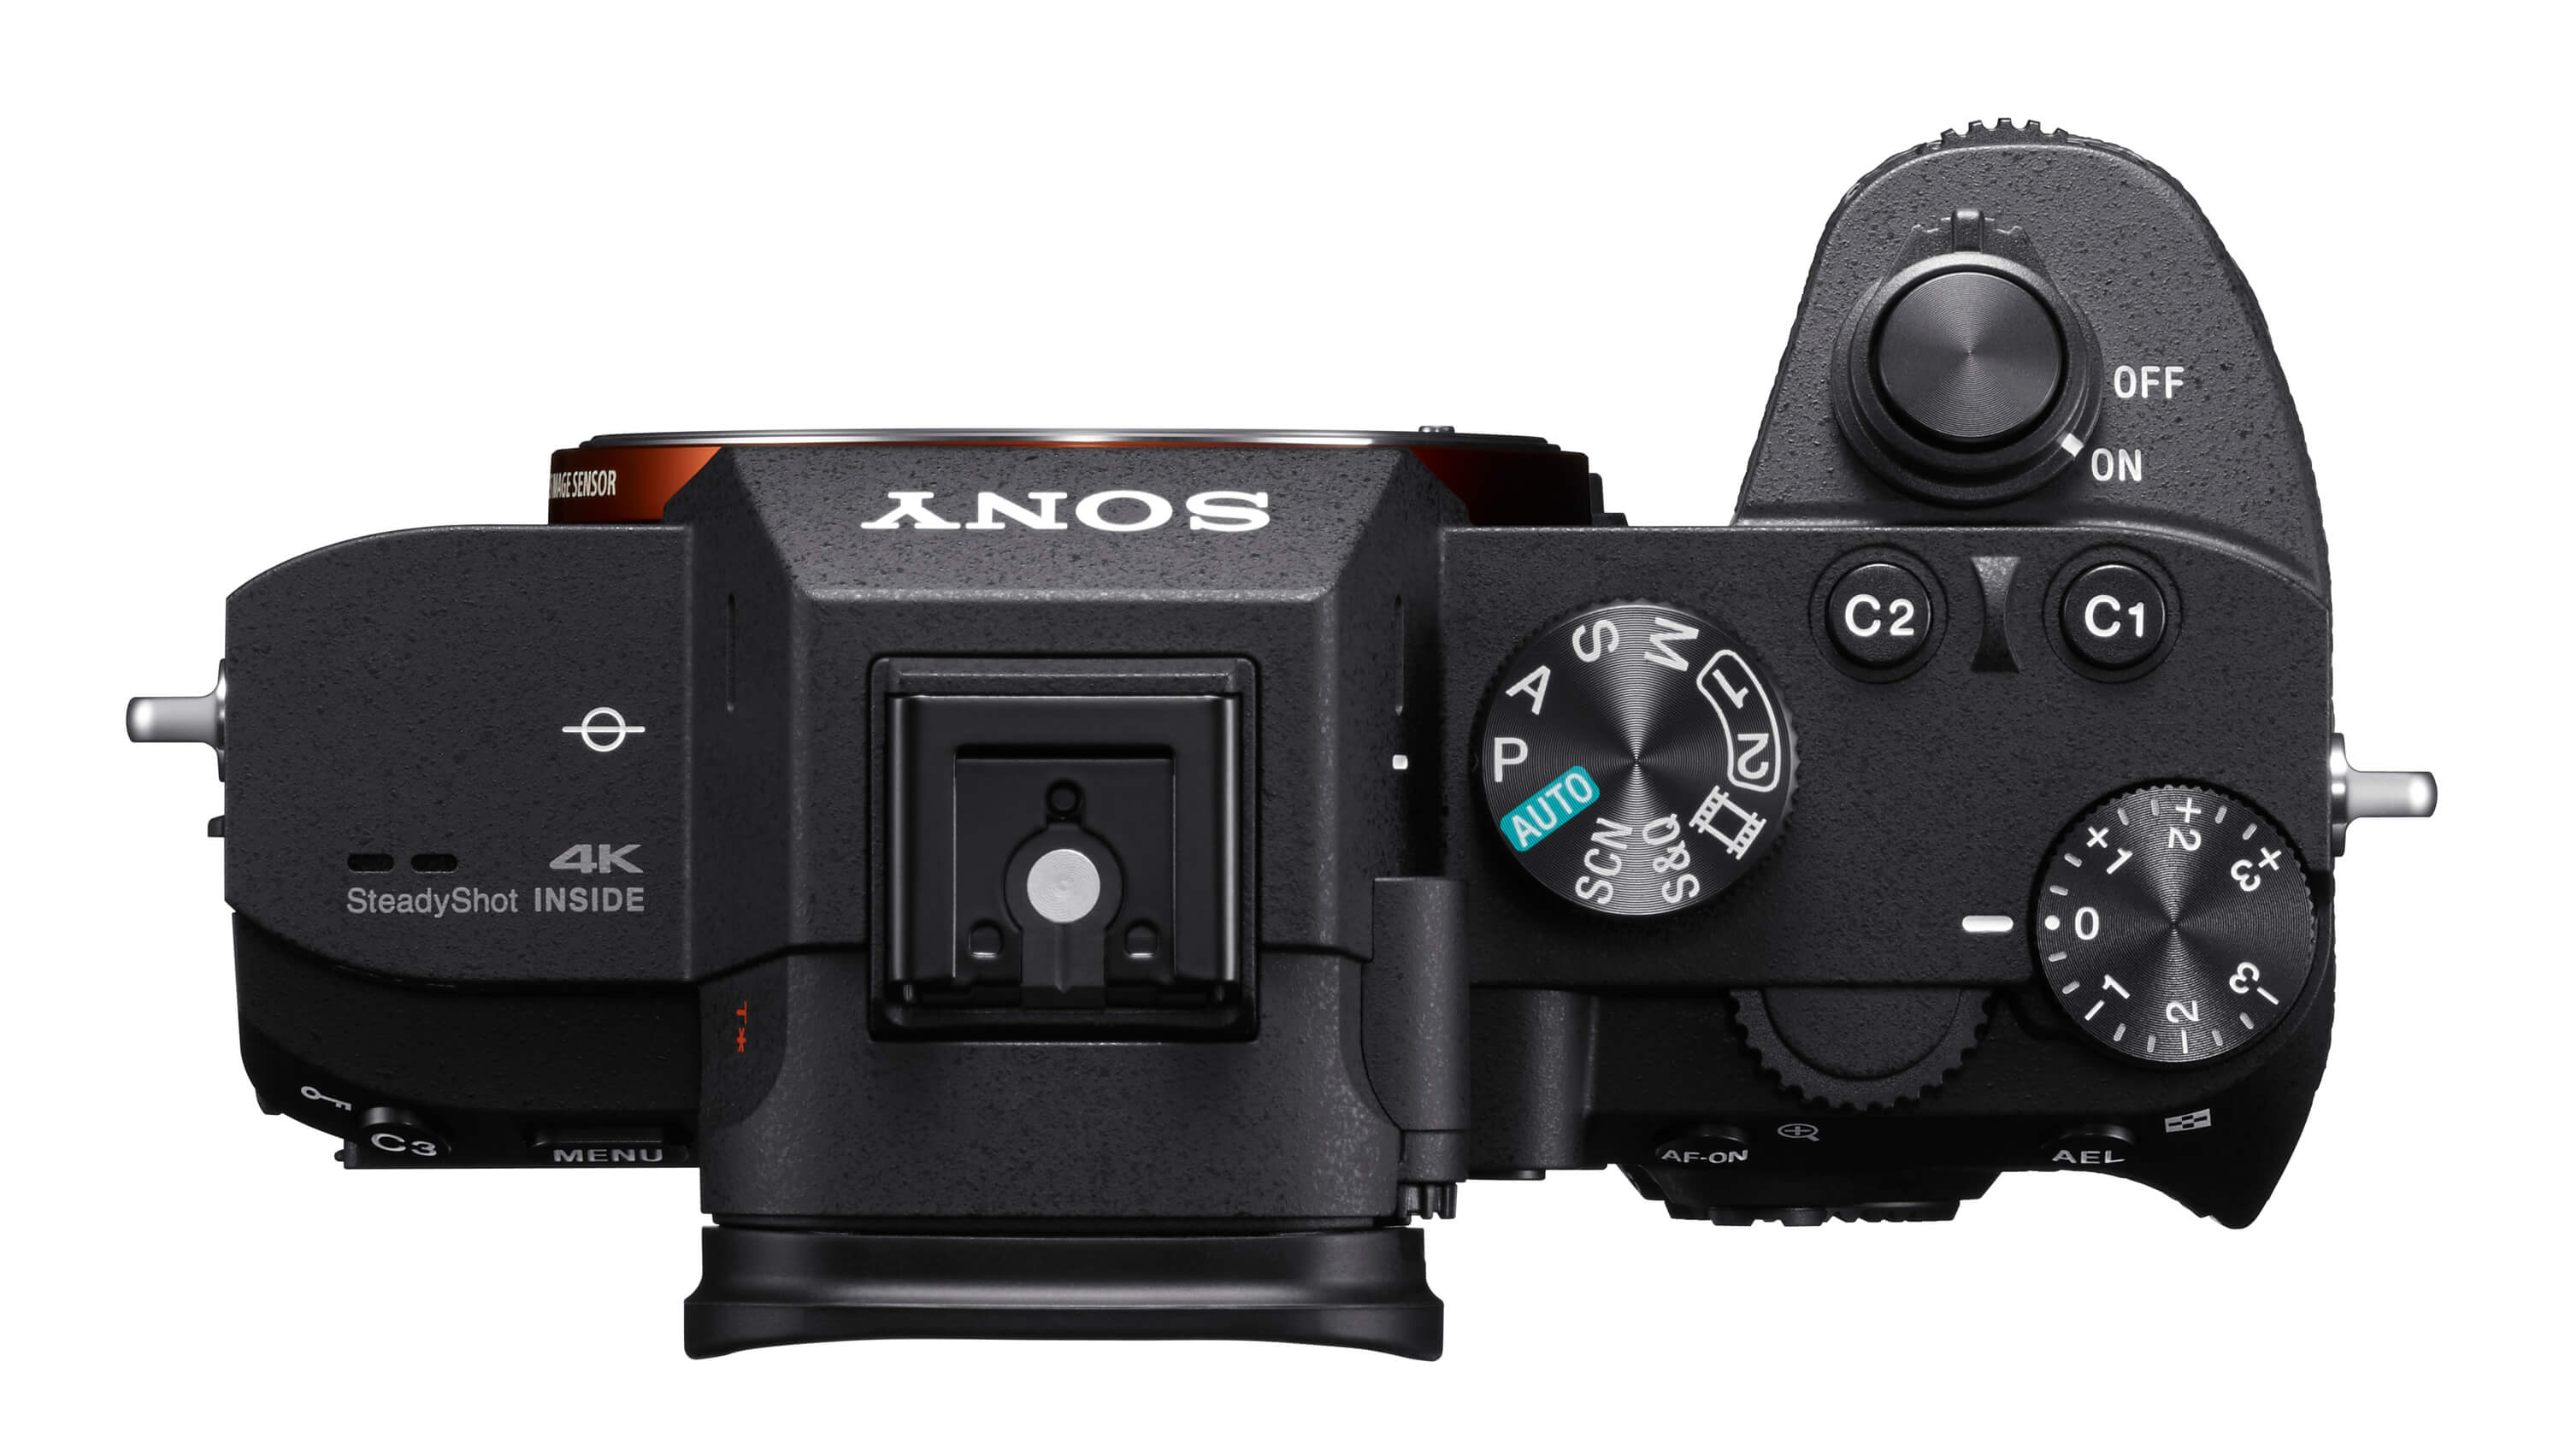 α7 III - 數位單眼相機- Sony 台灣官方購物網站- Sony Store, Online 